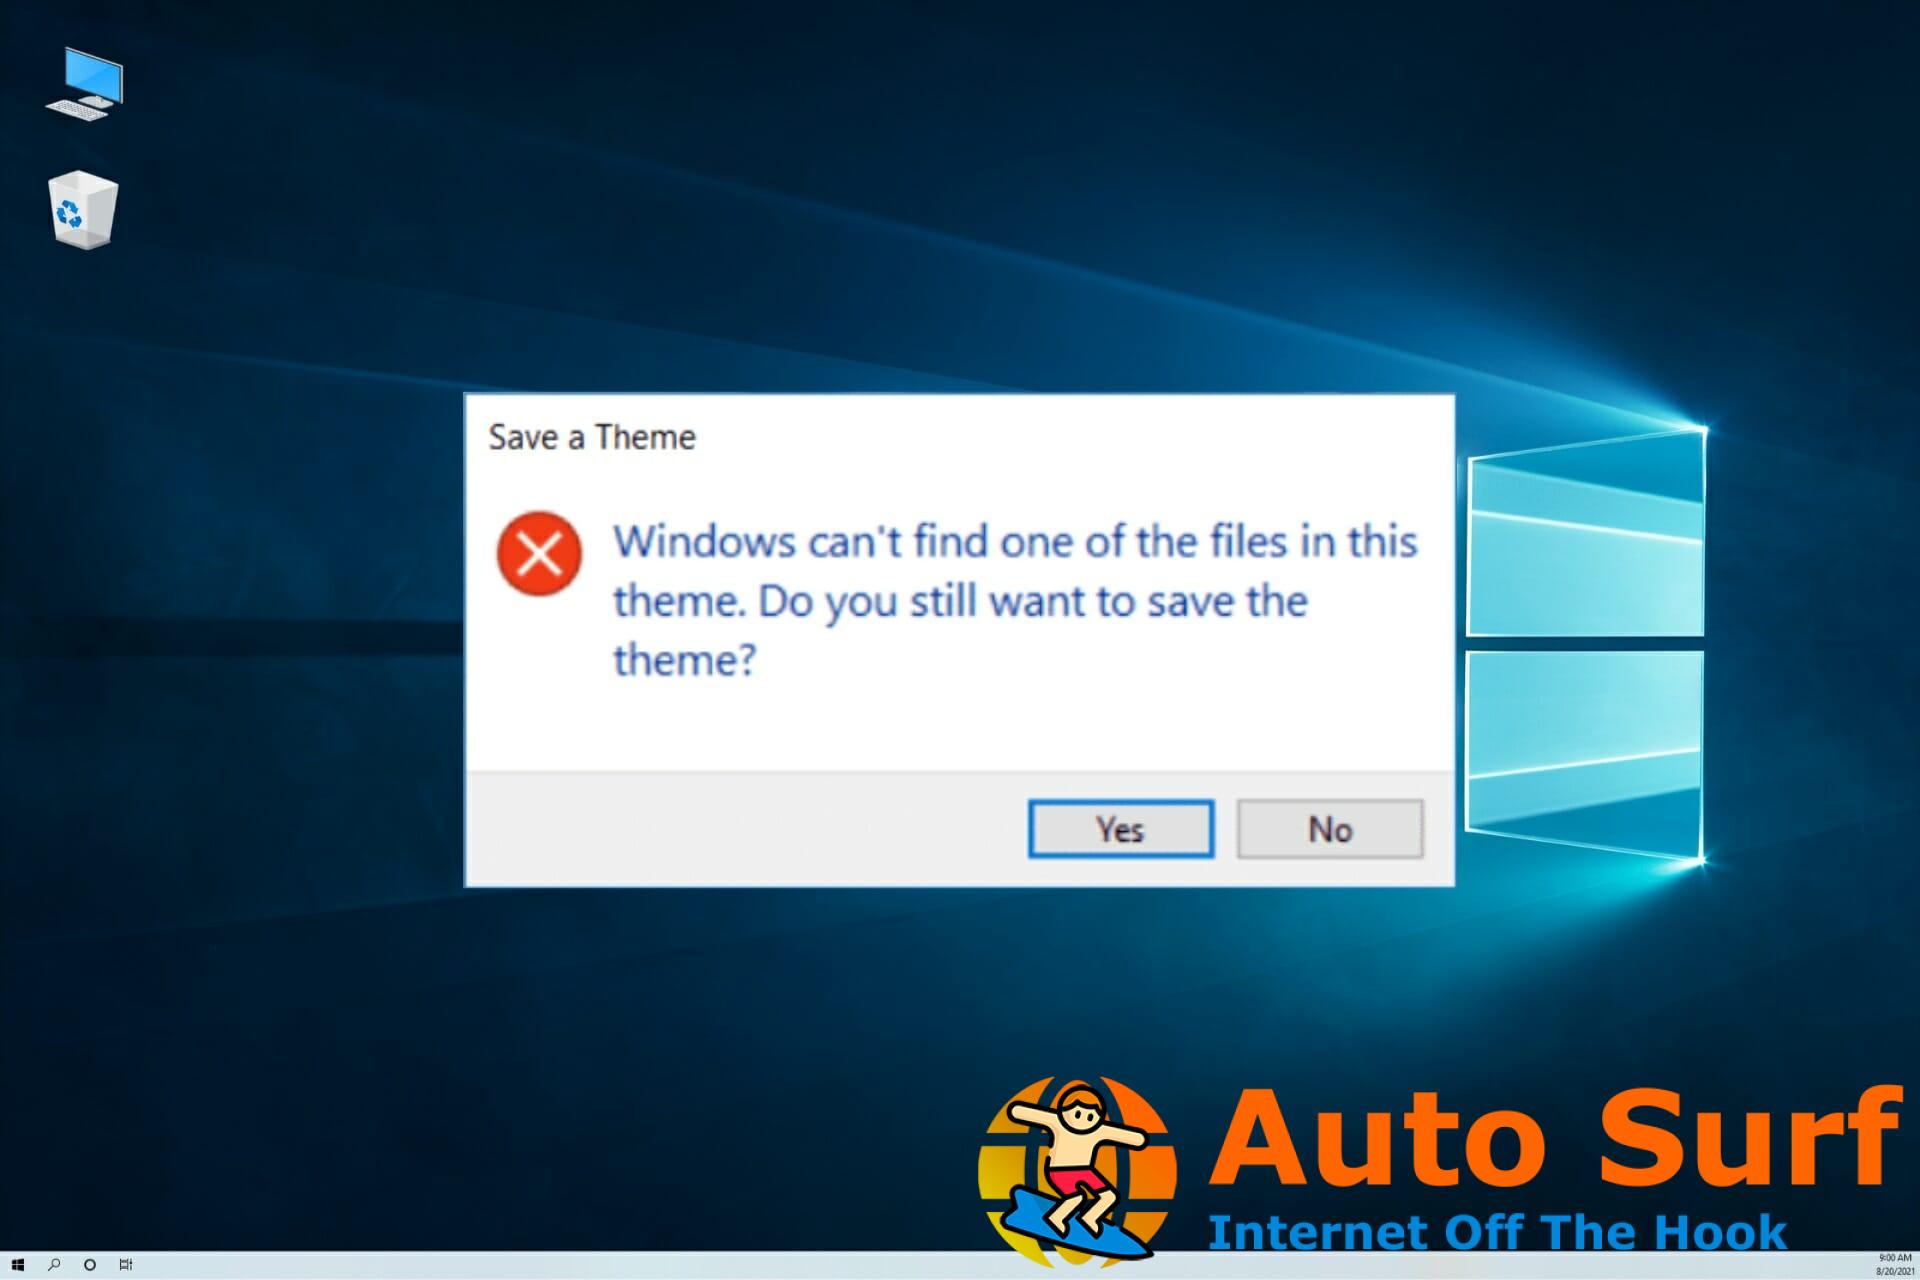 REVISIÓN: Windows no puede encontrar uno de los archivos en este tema